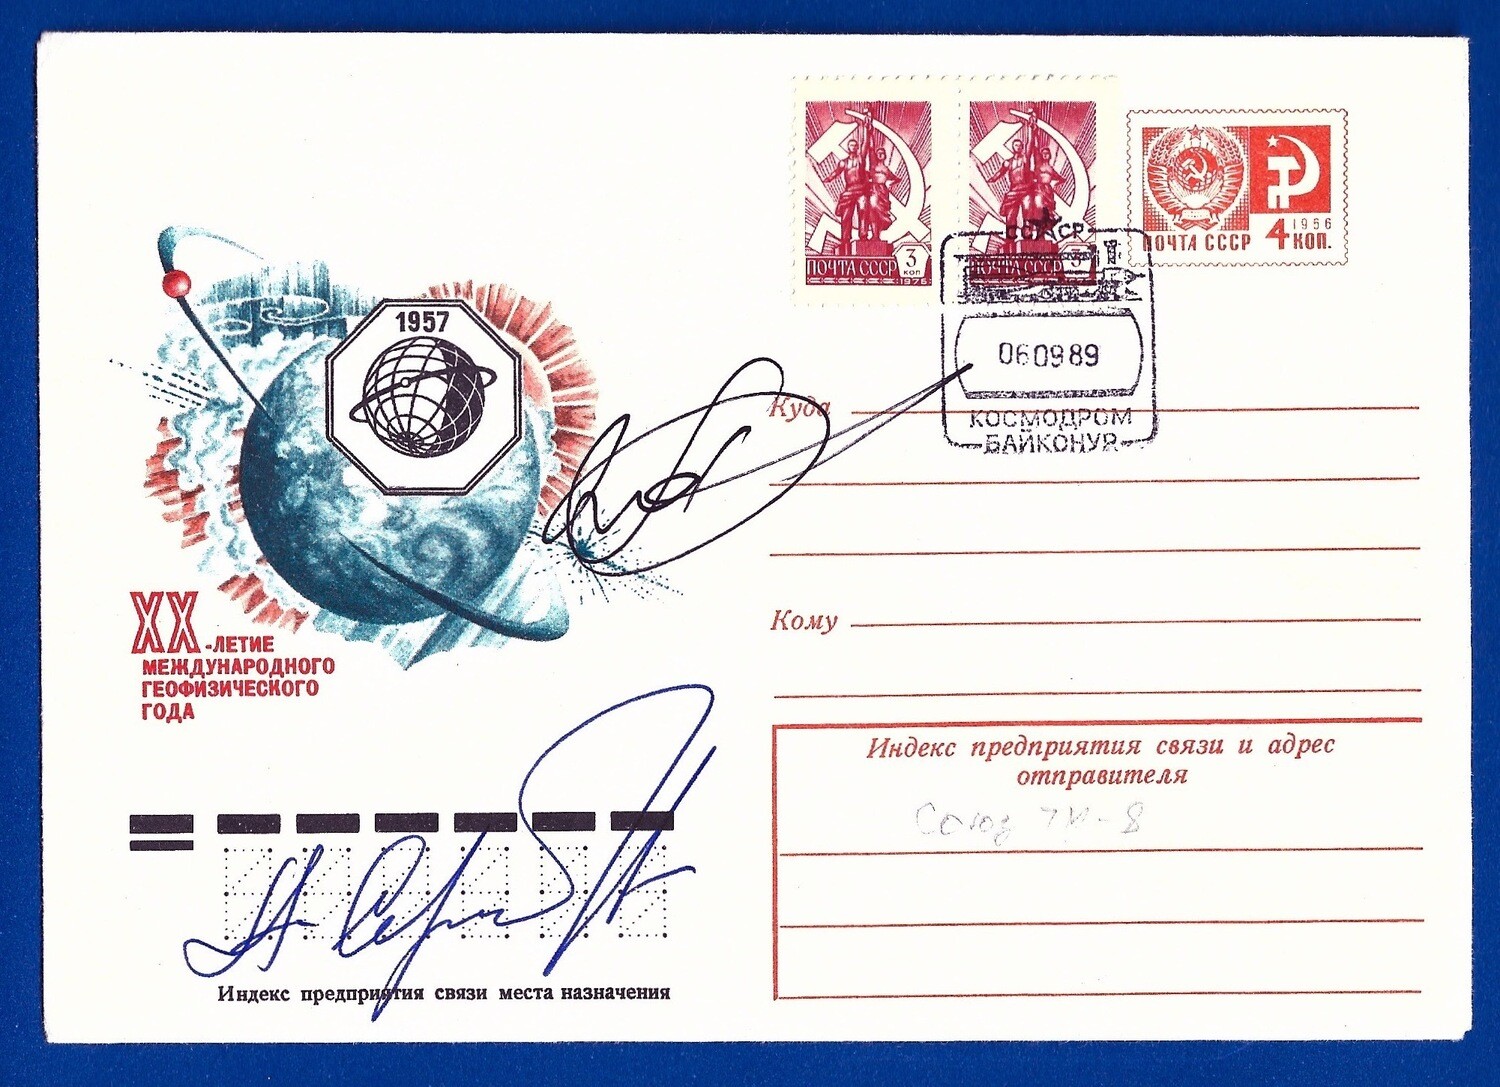 1989 Soyuz TM-8 signed cover